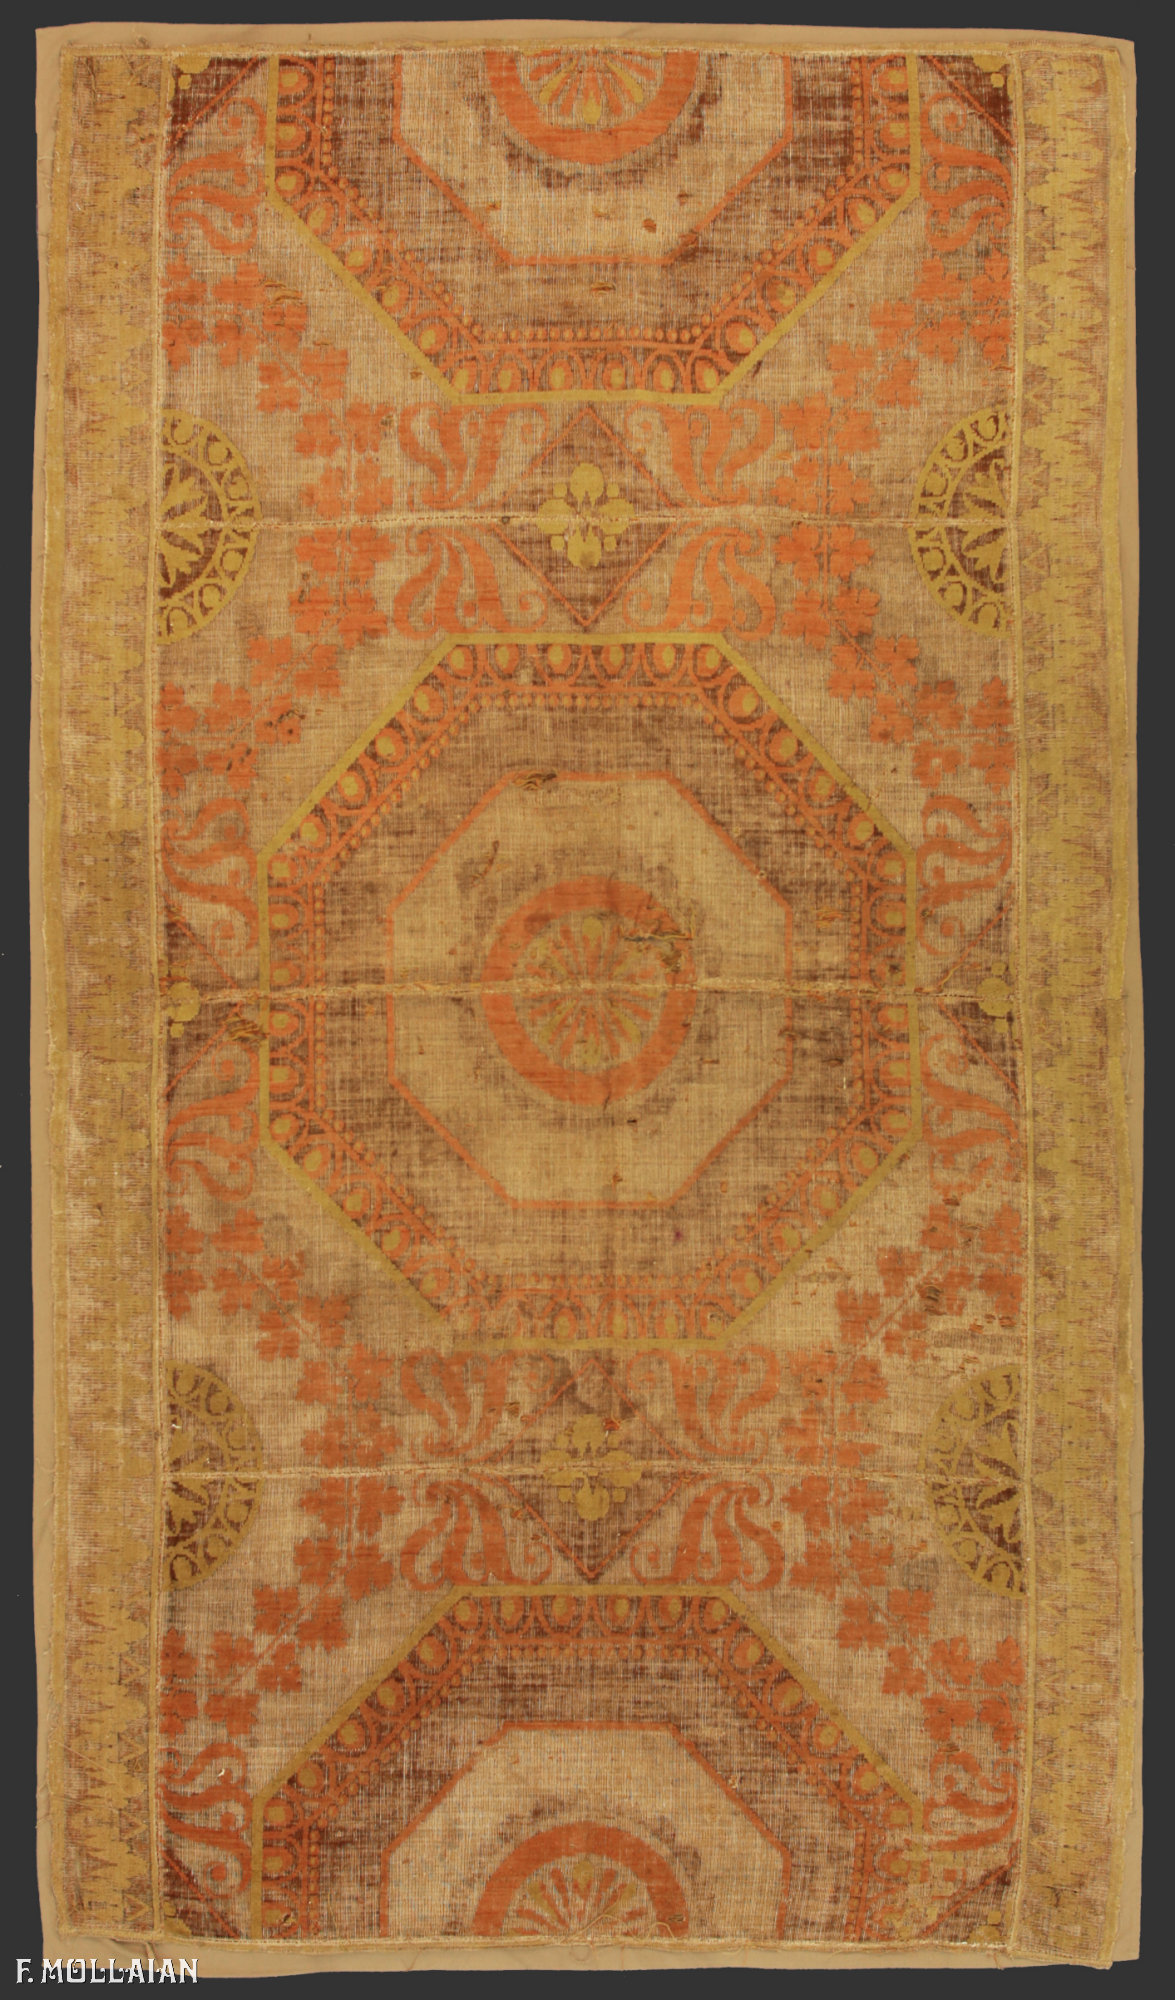 Antique Spanish Textile Alcaraz n°:33162978